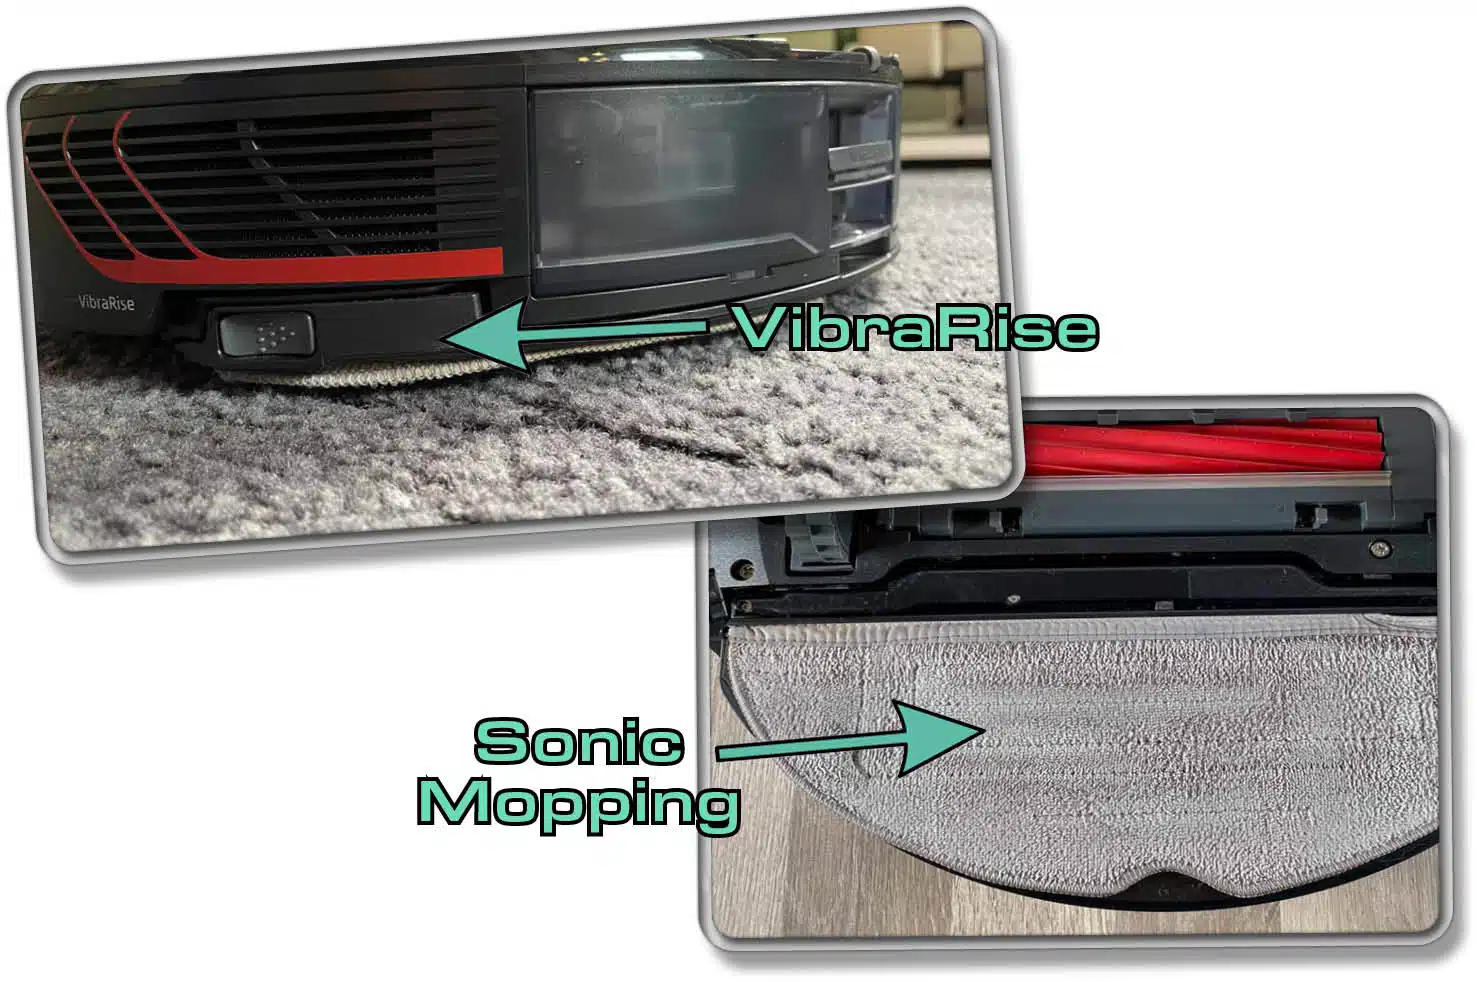 Das ist die Sonic Mopping und VibraRise Technologie des Roborock S7 MaxV Ultra. Er hebt das Wischpad über Teppich an. Beim Wischvorgang vibriert ein Modul auf der Wischplatte. 